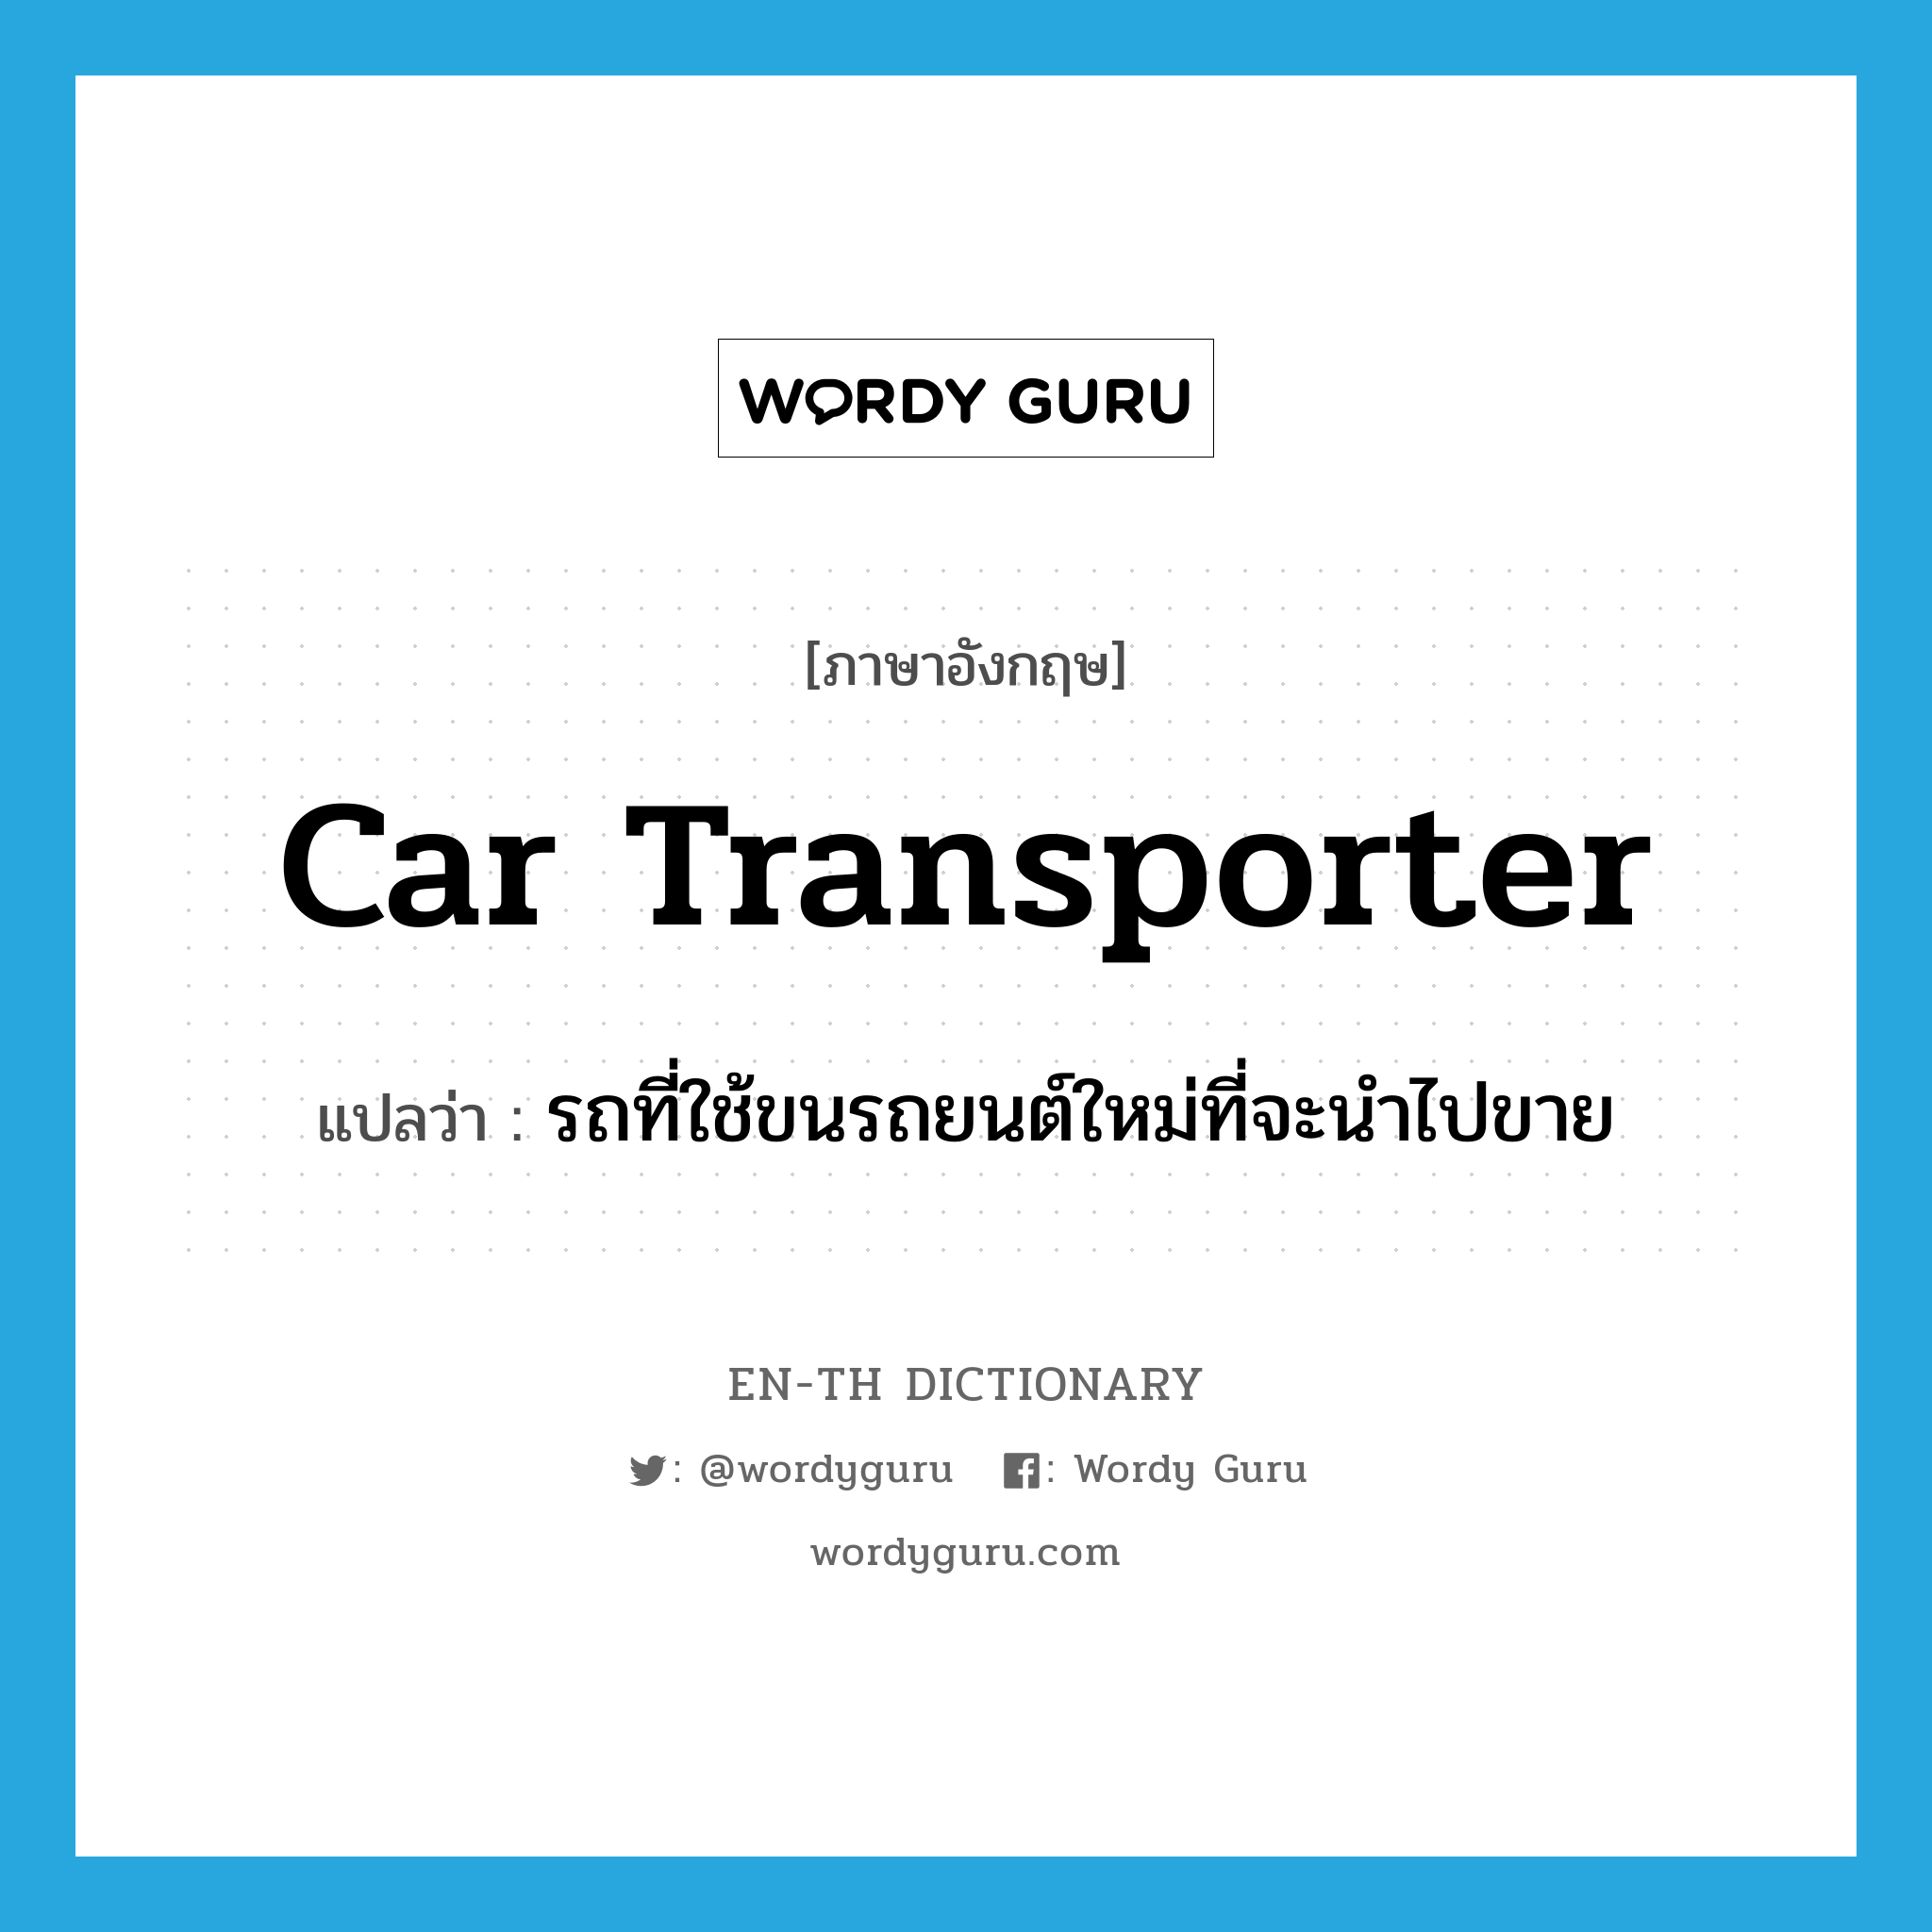 car transporter แปลว่า?, คำศัพท์ภาษาอังกฤษ car transporter แปลว่า รถที่ใช้ขนรถยนต์ใหม่ที่จะนำไปขาย ประเภท N หมวด N